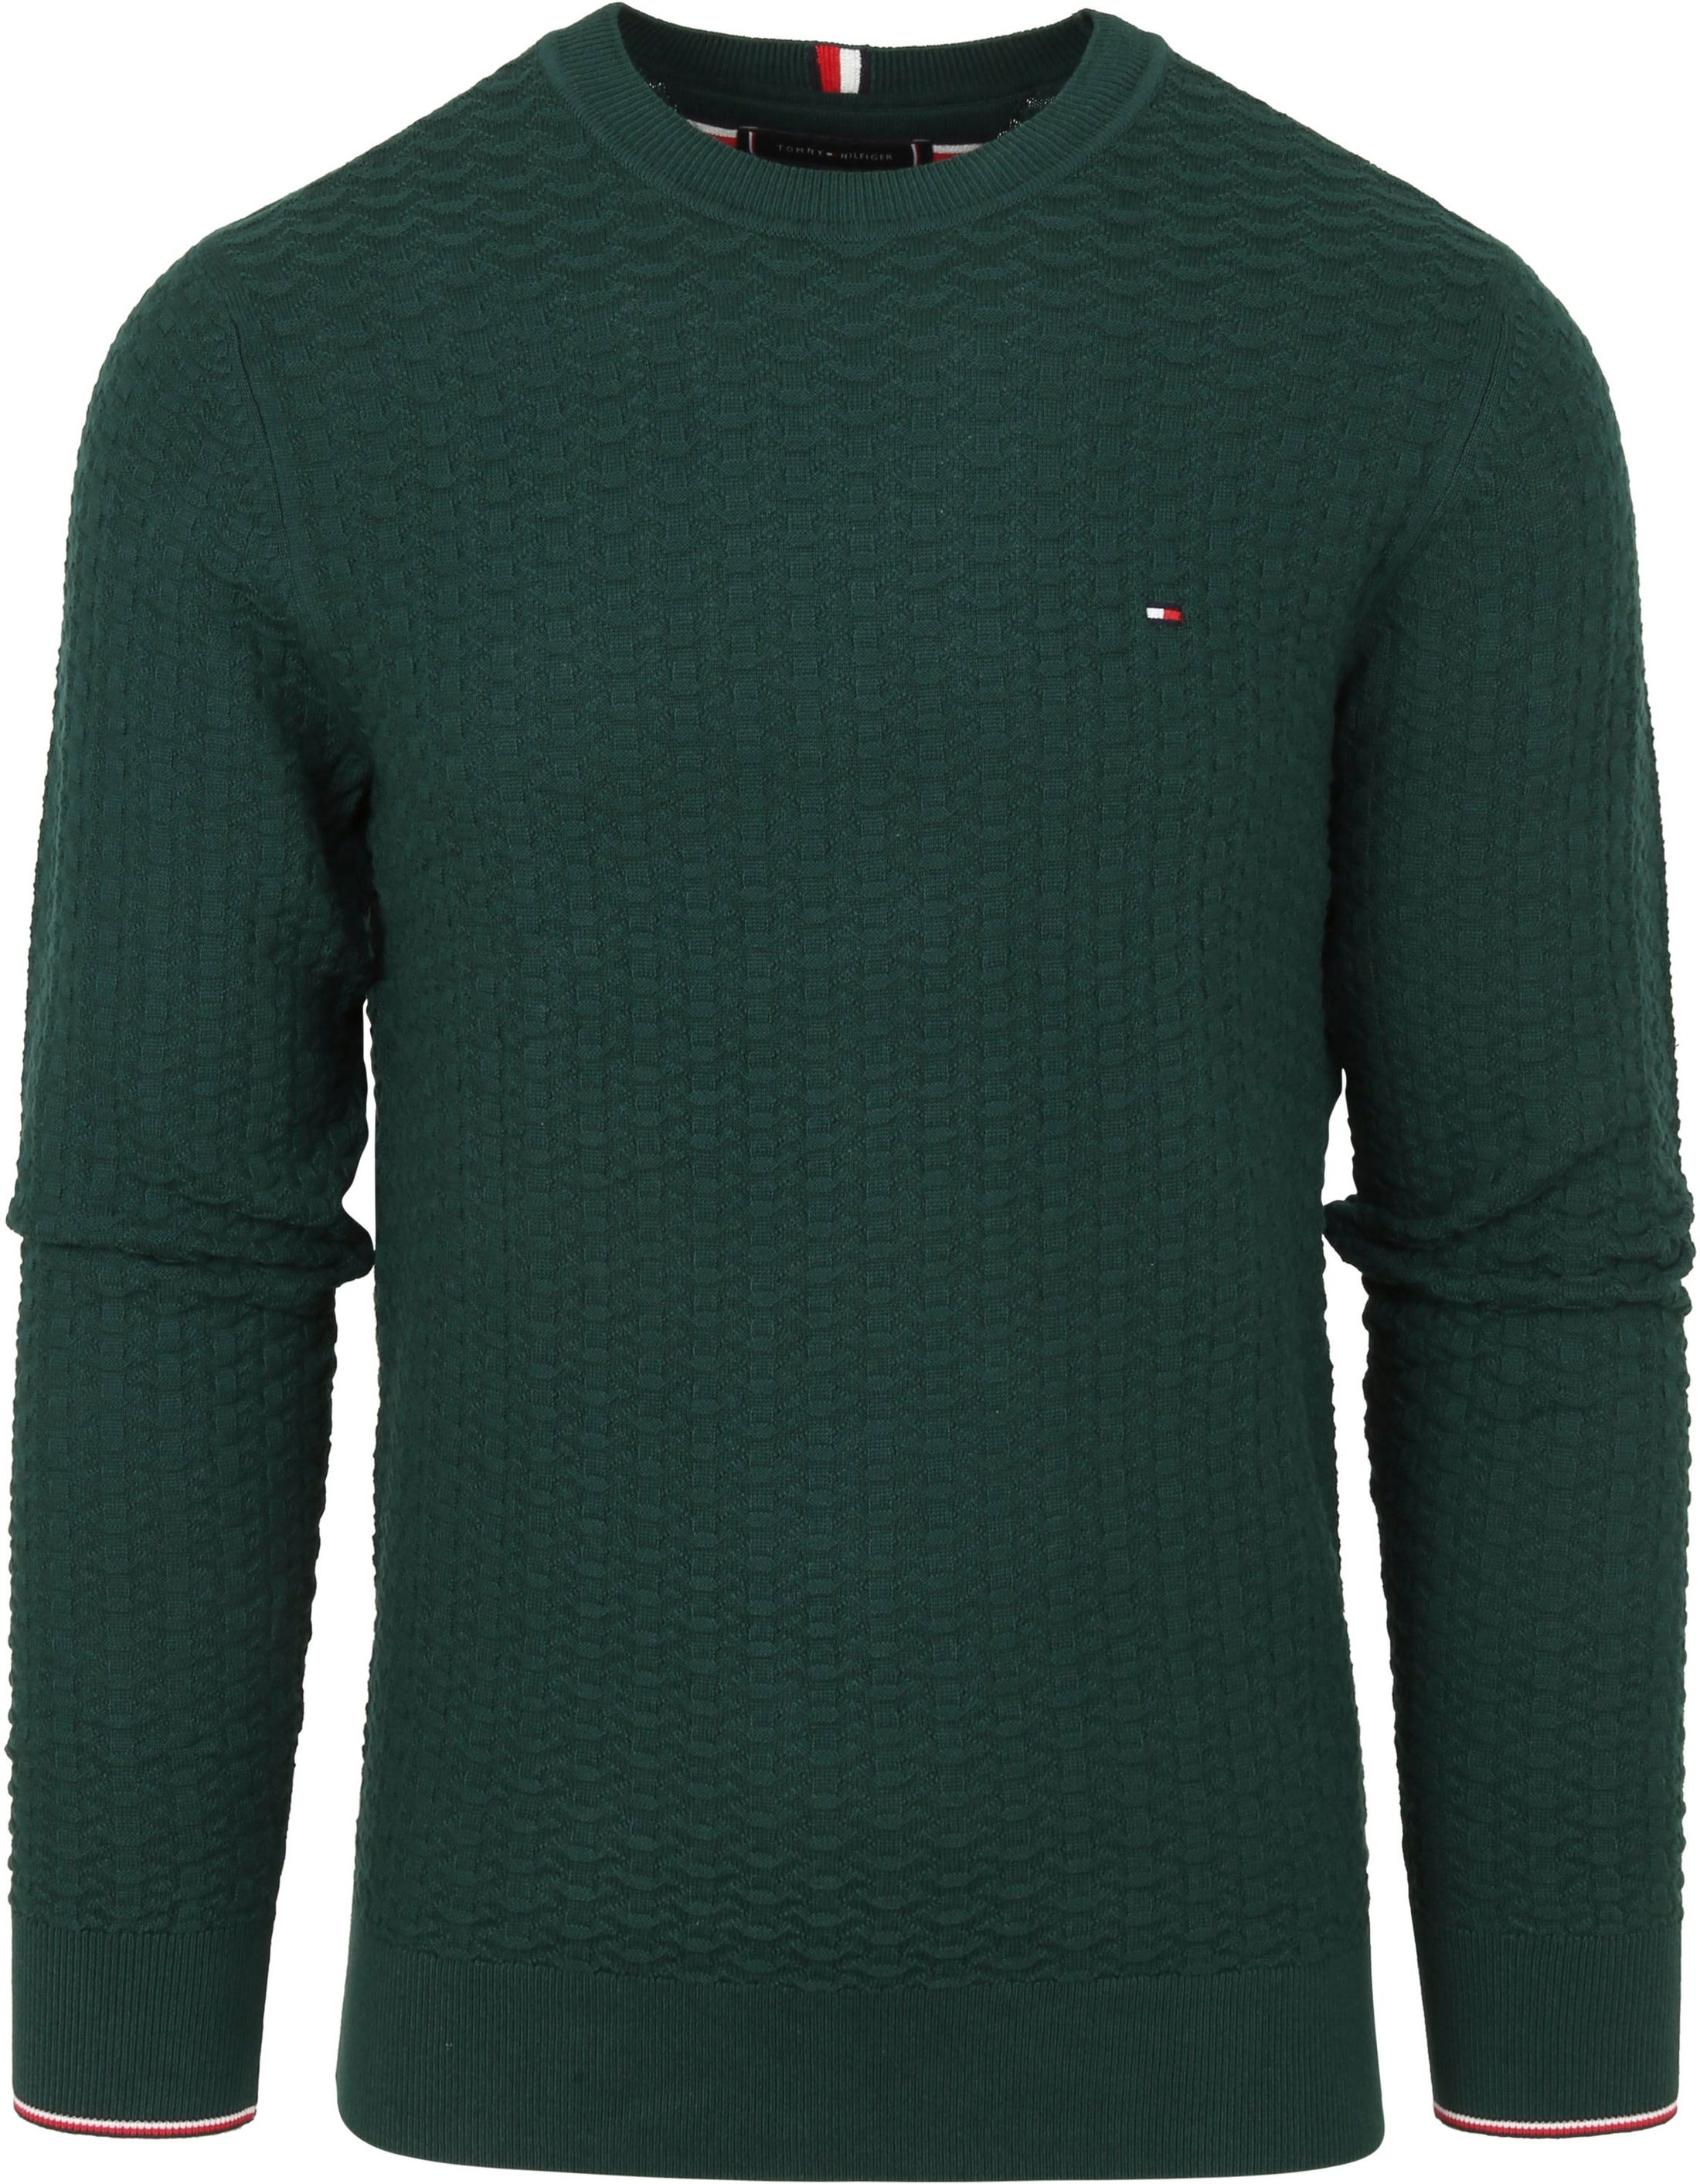 Tommy Hilfiger Structural Sweater Dark Dark Green Green size L